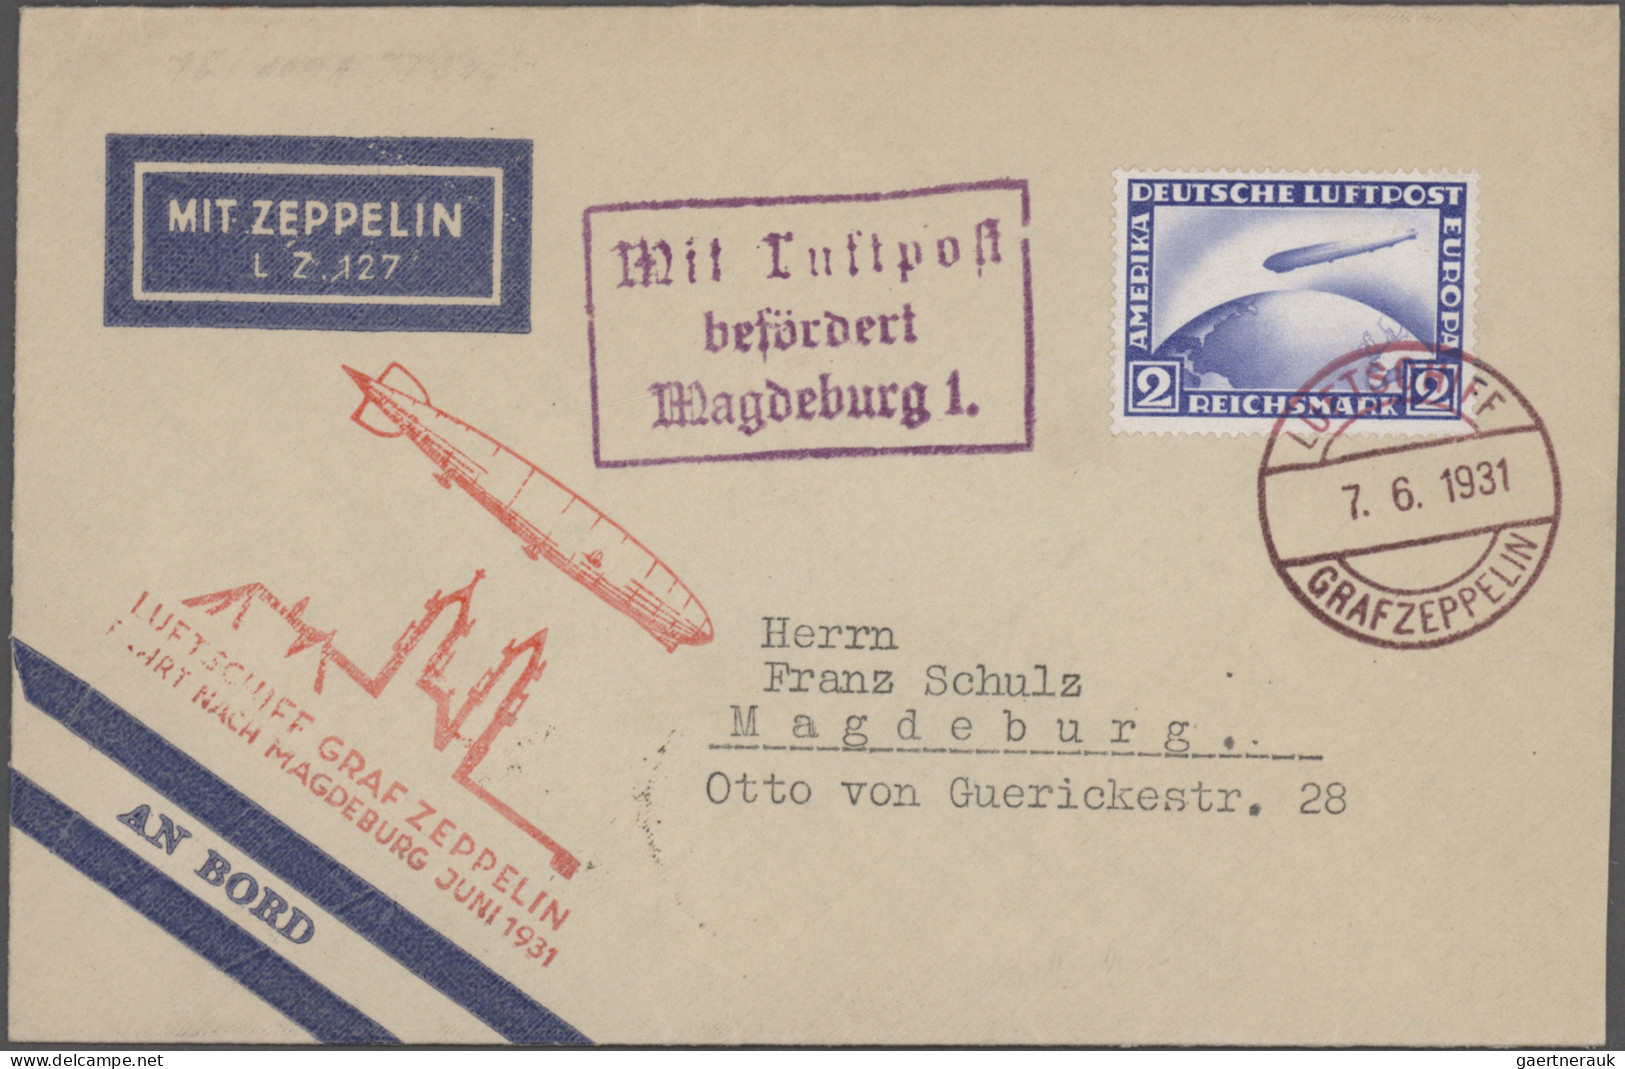 Air Mail - Germany: 1912/1931, Lot von sieben Belegen, dabei Karte Flugpost Heid